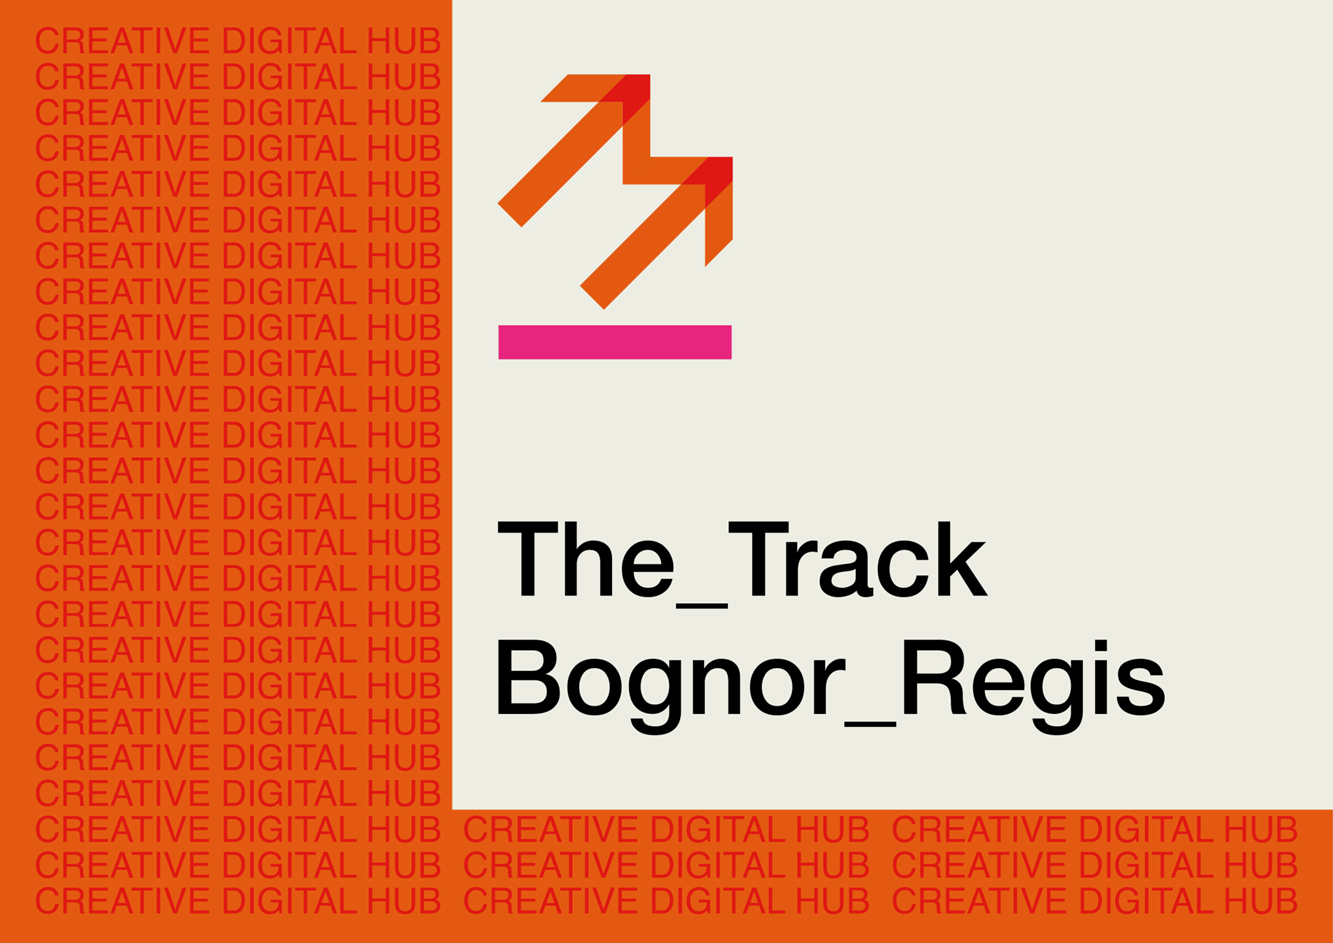 The Track Bognor Regis